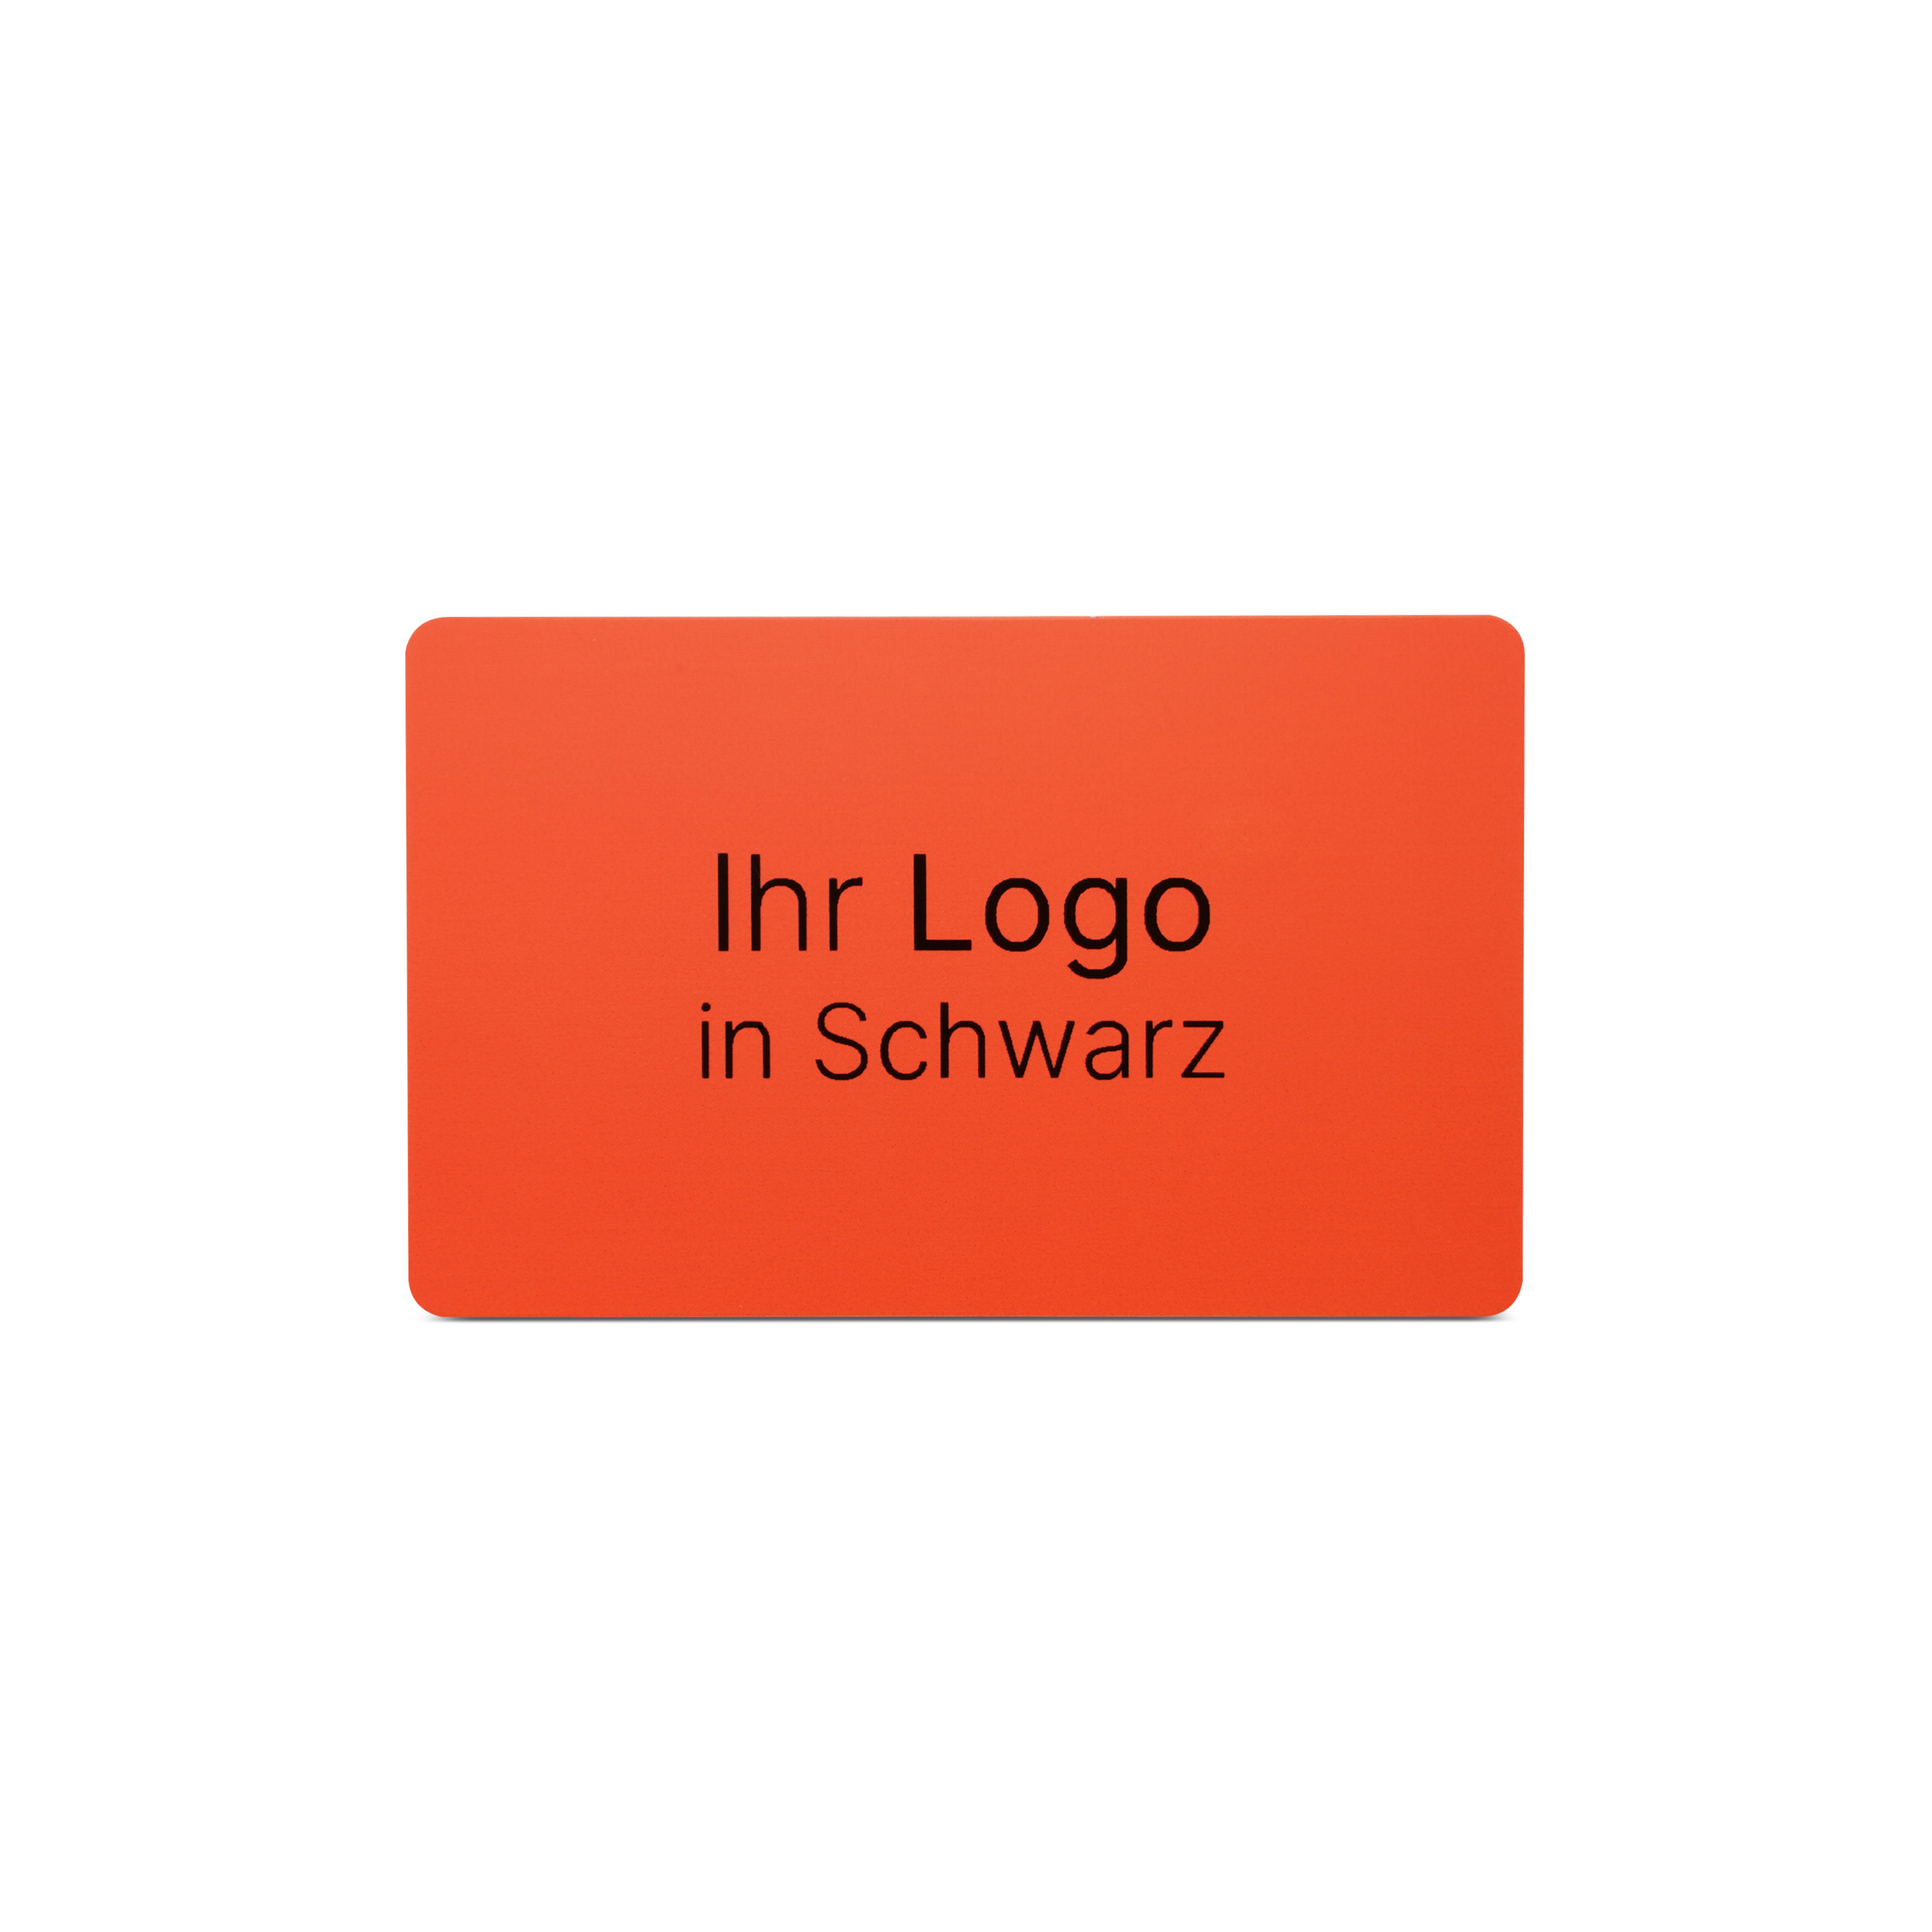 Rote NFC Karte aus PVC mit Bedruckung "Ihr Logo in Schwarz"